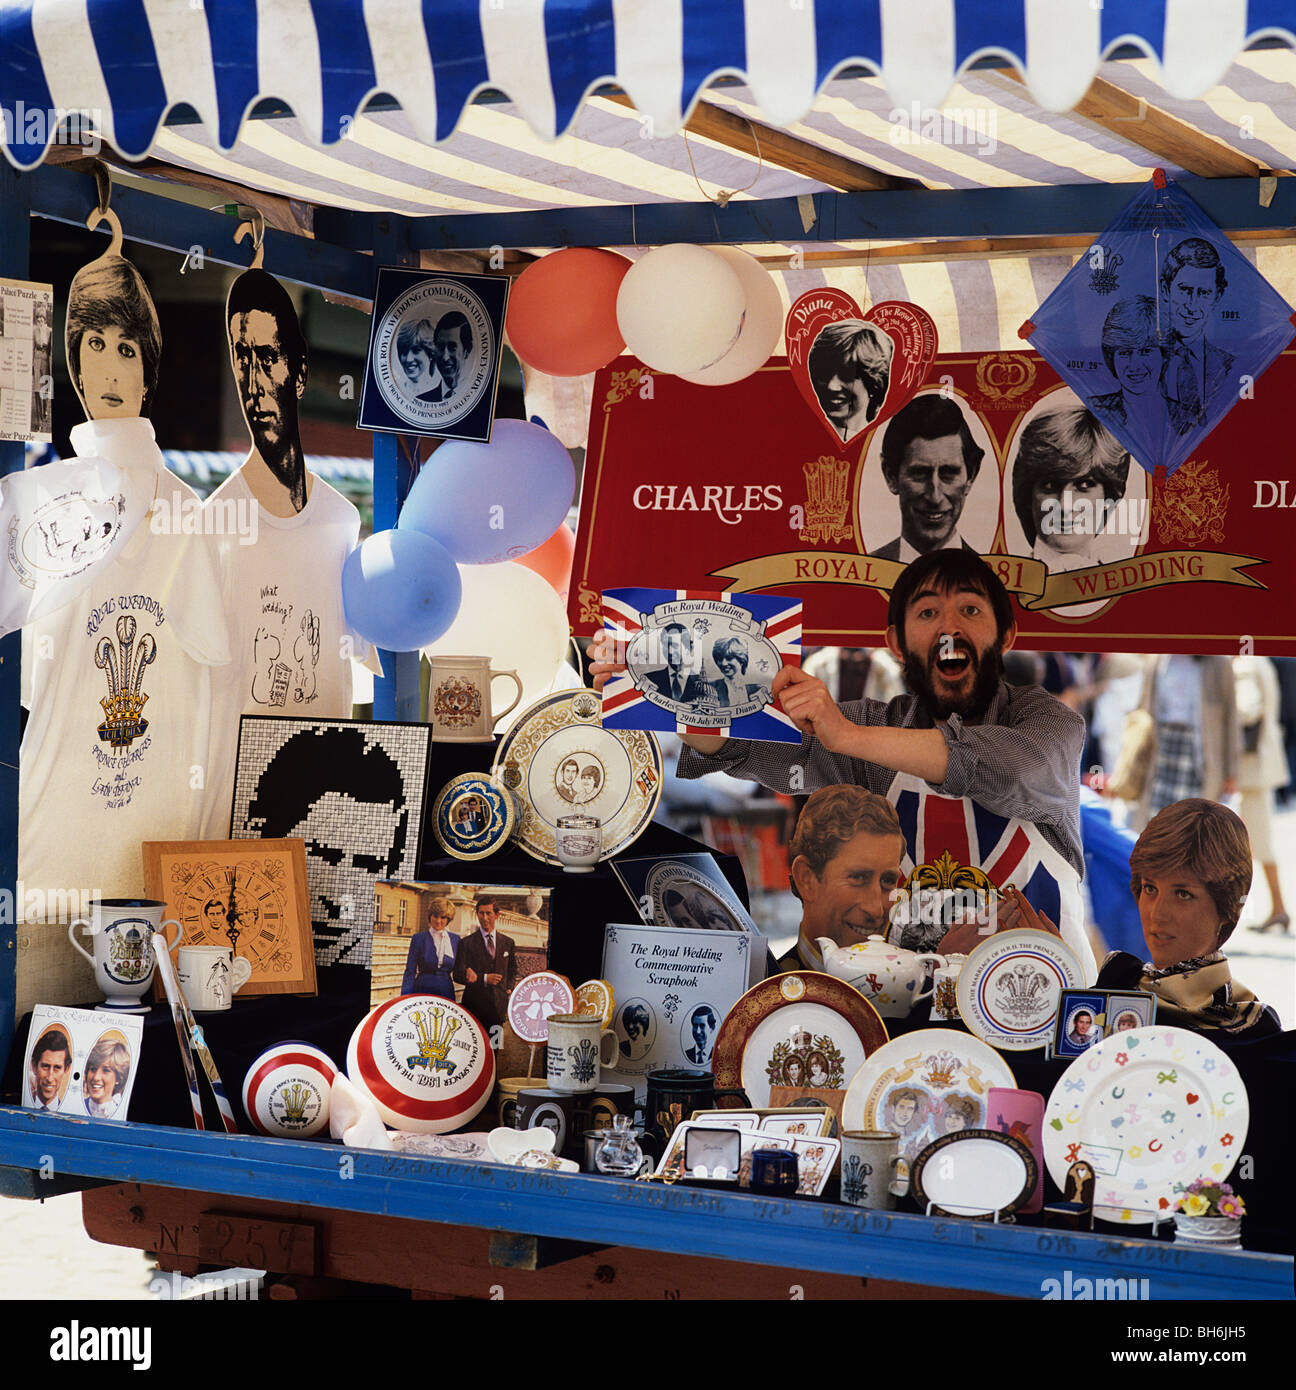 Charles & Diana 1981 Mariage Royal souvenirs sur un étal du marché Banque D'Images